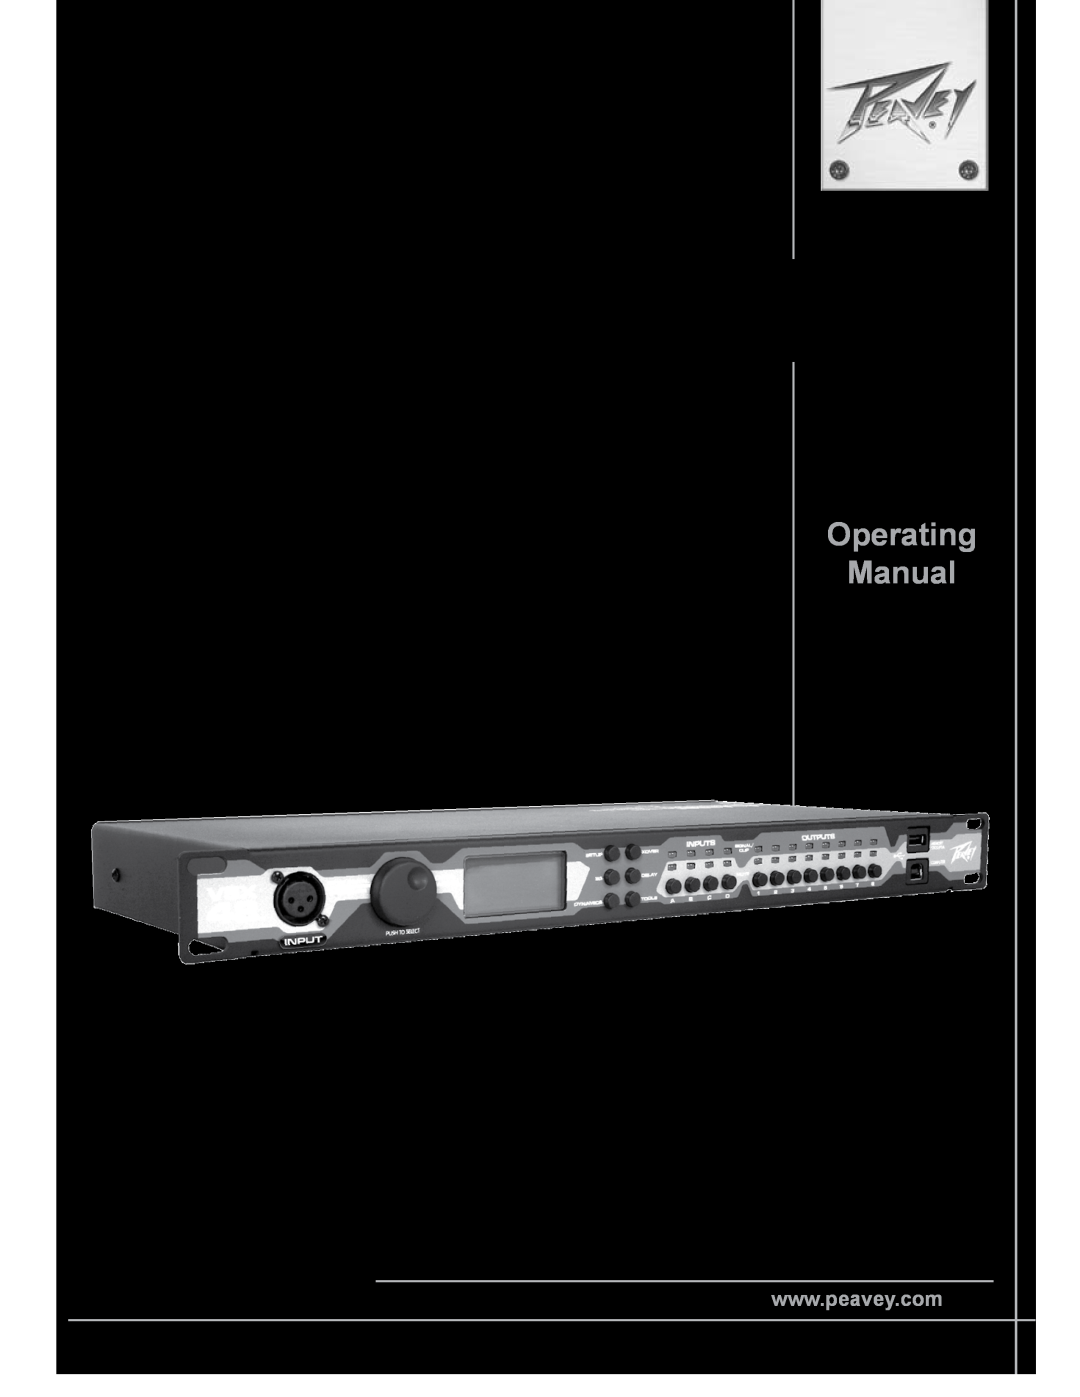 Peavey VSX 48 manual Operating Manual, Digital Loudspeaker Processor 